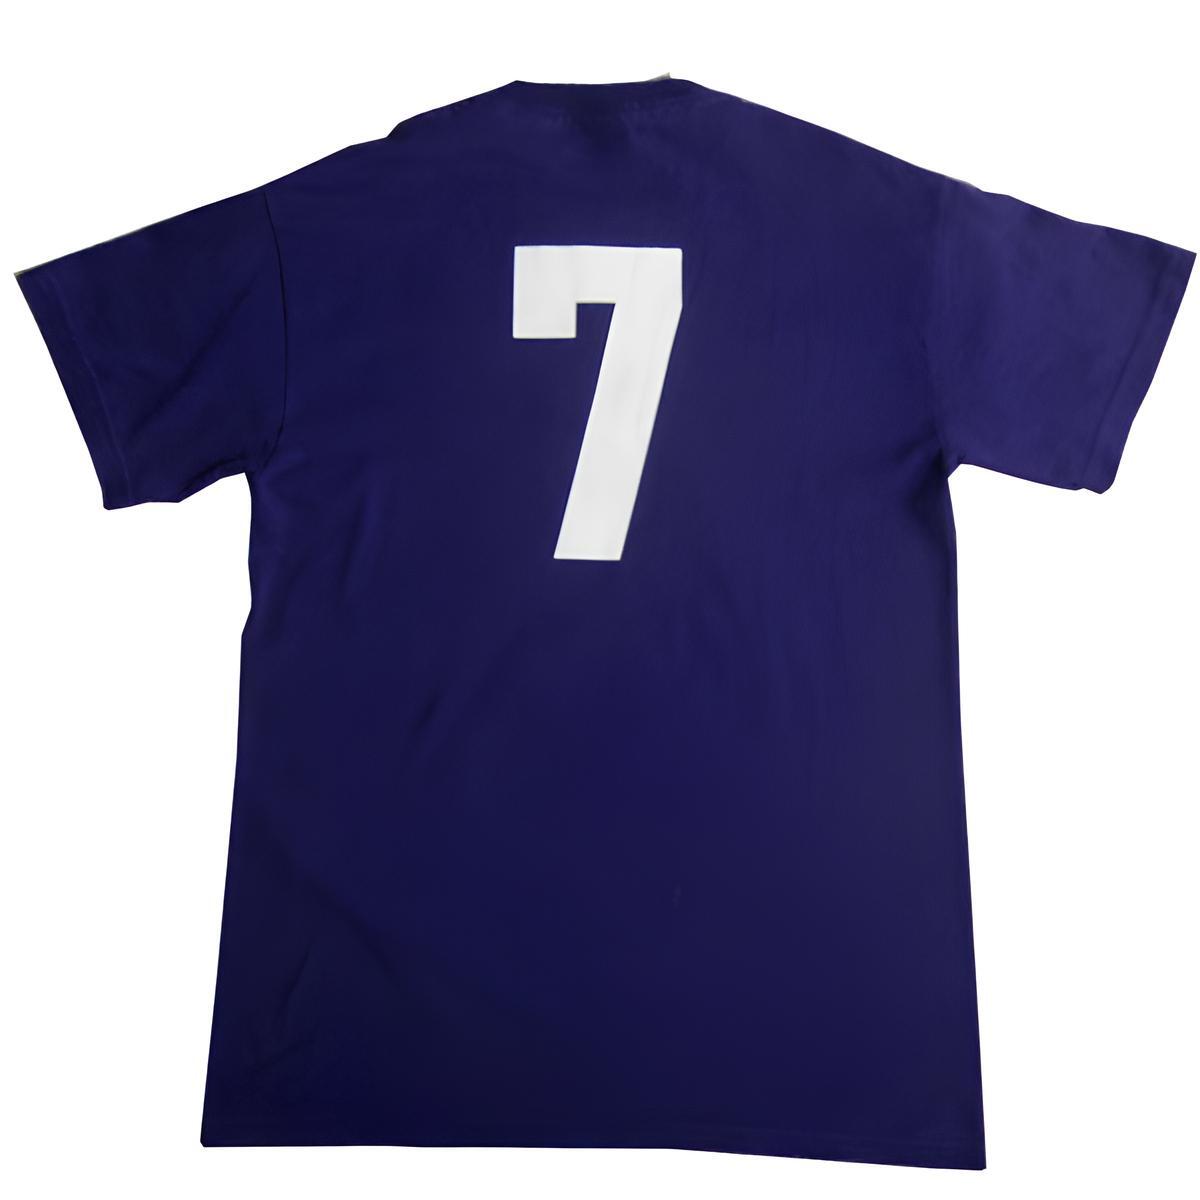 GILDAN サッカー プリントTシャツ 背番号 半袖 ティーシャツ 紫色 パープル メンズ Sサイズ 古着 ユーズド tシャツ tee #n-198_画像2